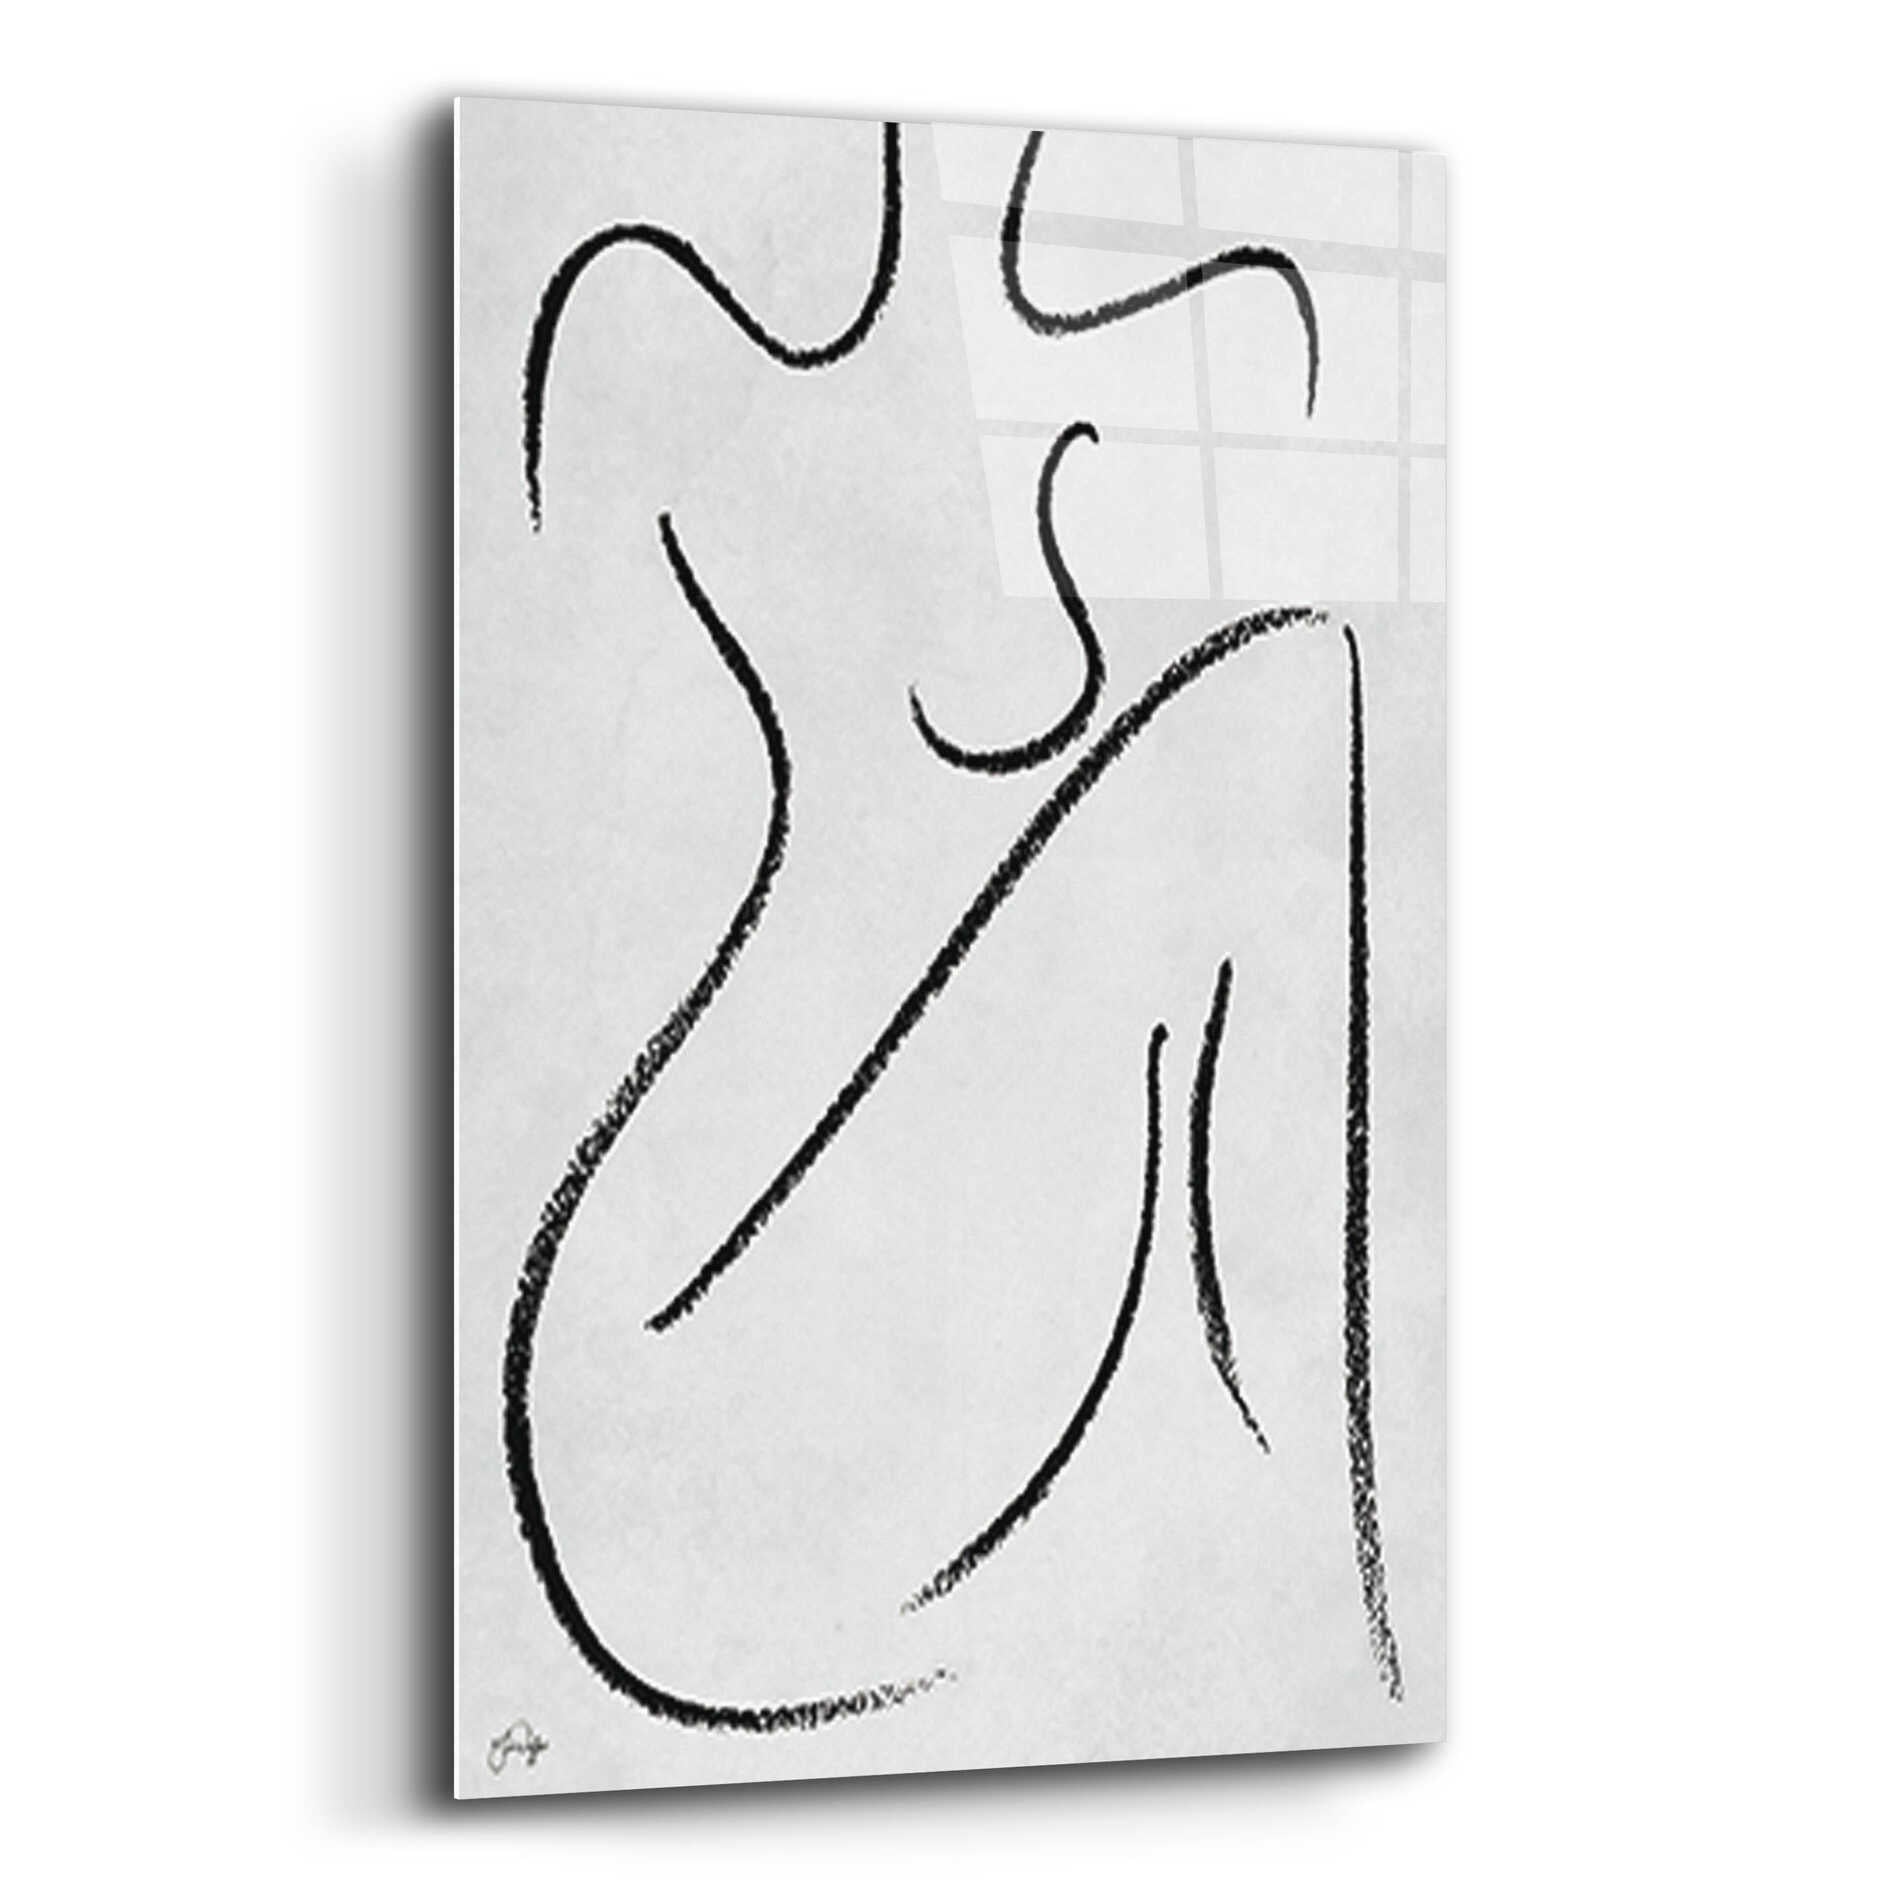 Epic Art 'Sitting Woman' by Yass Naffas Designs, Acrylic Glass Wall Art,12x16